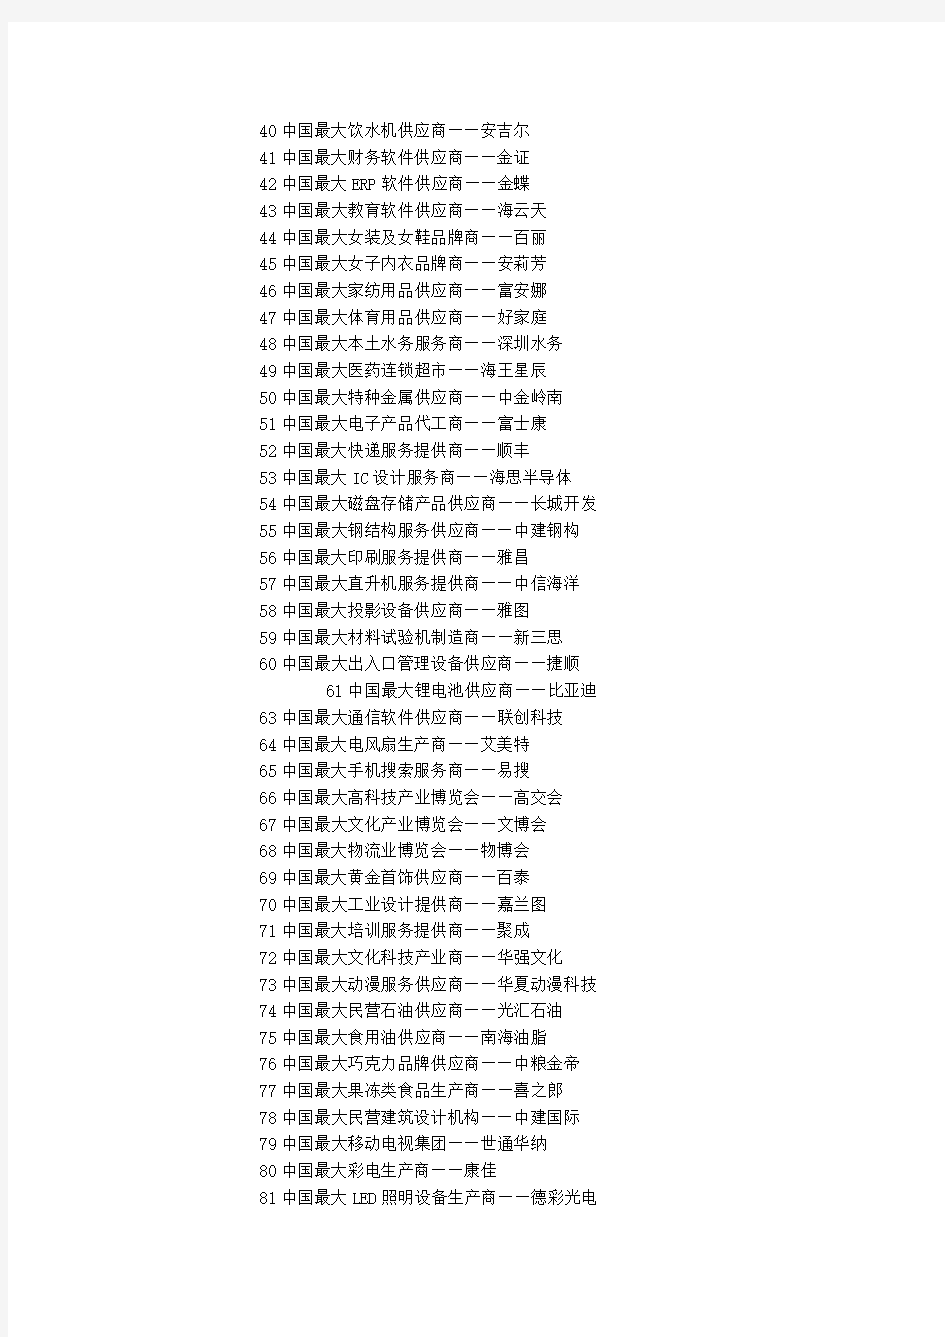 2014深圳总部企业情况排名一览表